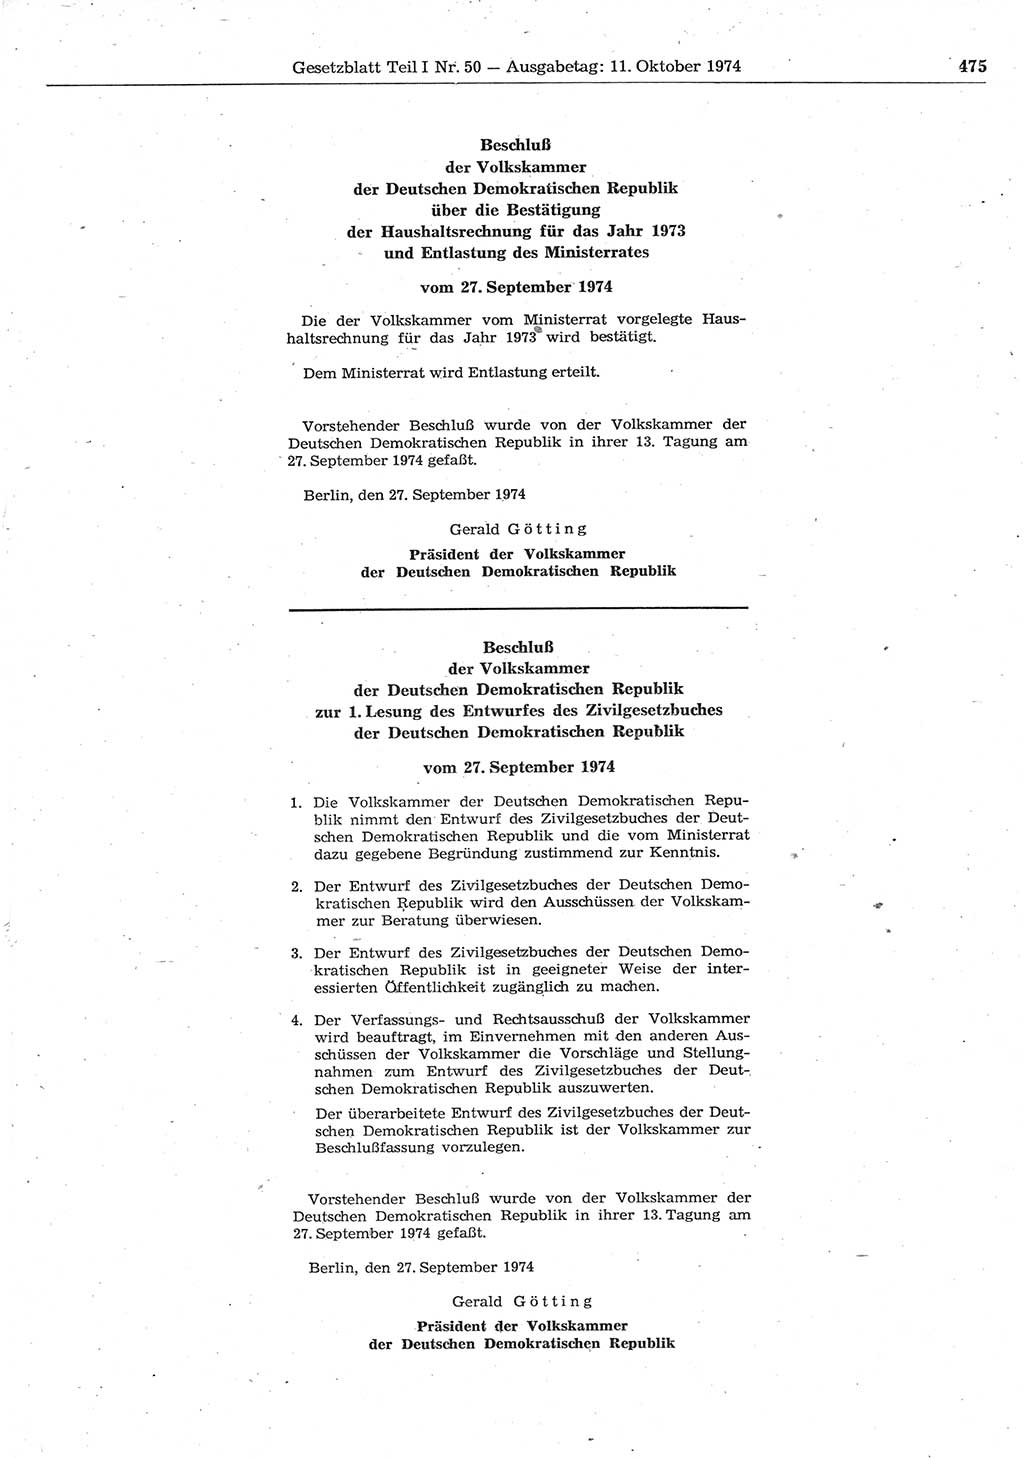 Gesetzblatt (GBl.) der Deutschen Demokratischen Republik (DDR) Teil Ⅰ 1974, Seite 475 (GBl. DDR Ⅰ 1974, S. 475)